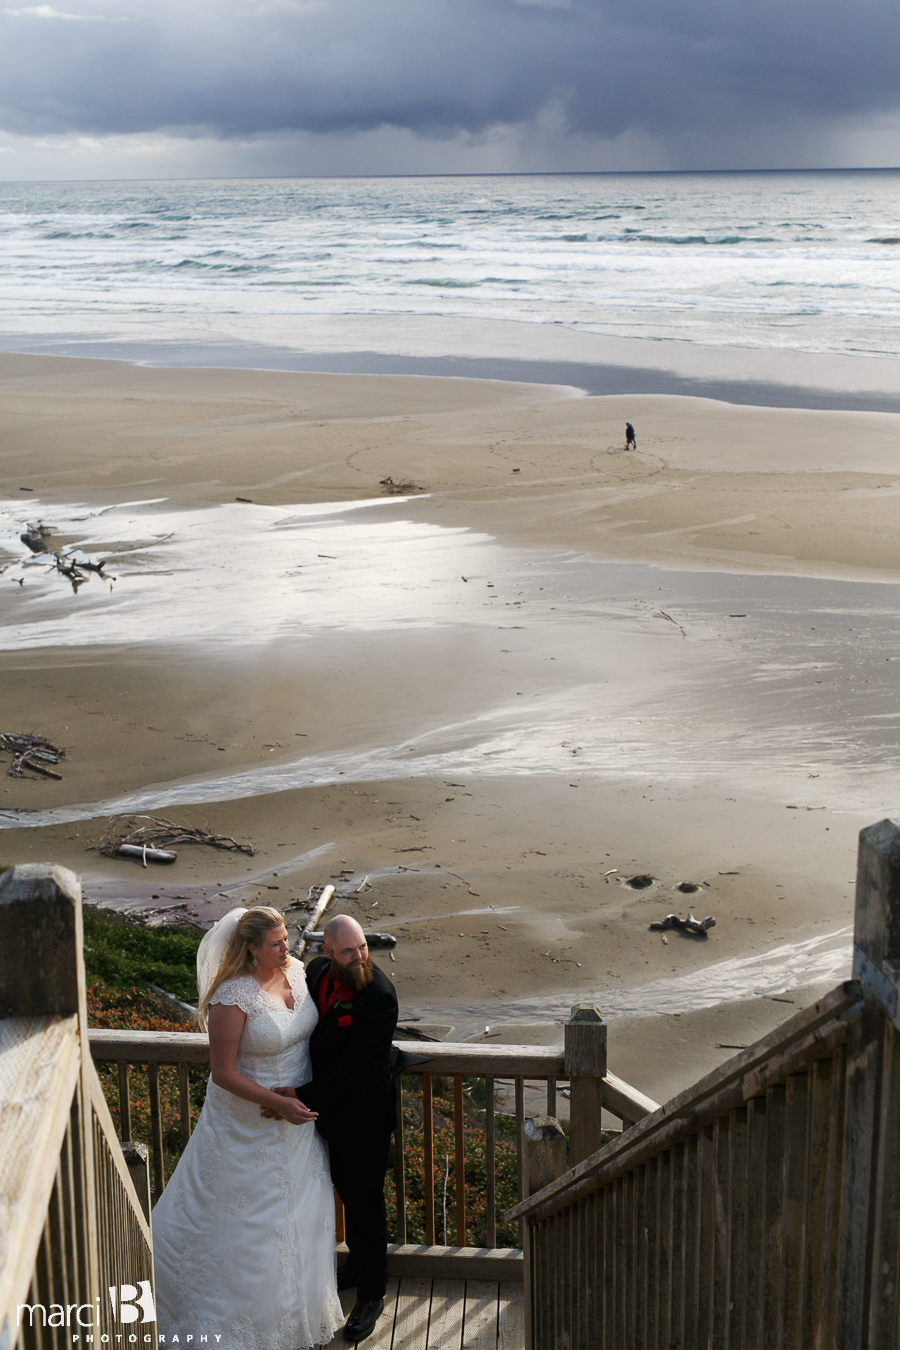 Newport wedding photography - Oregon wedding photographer - beach wedding - bride and groom portraits